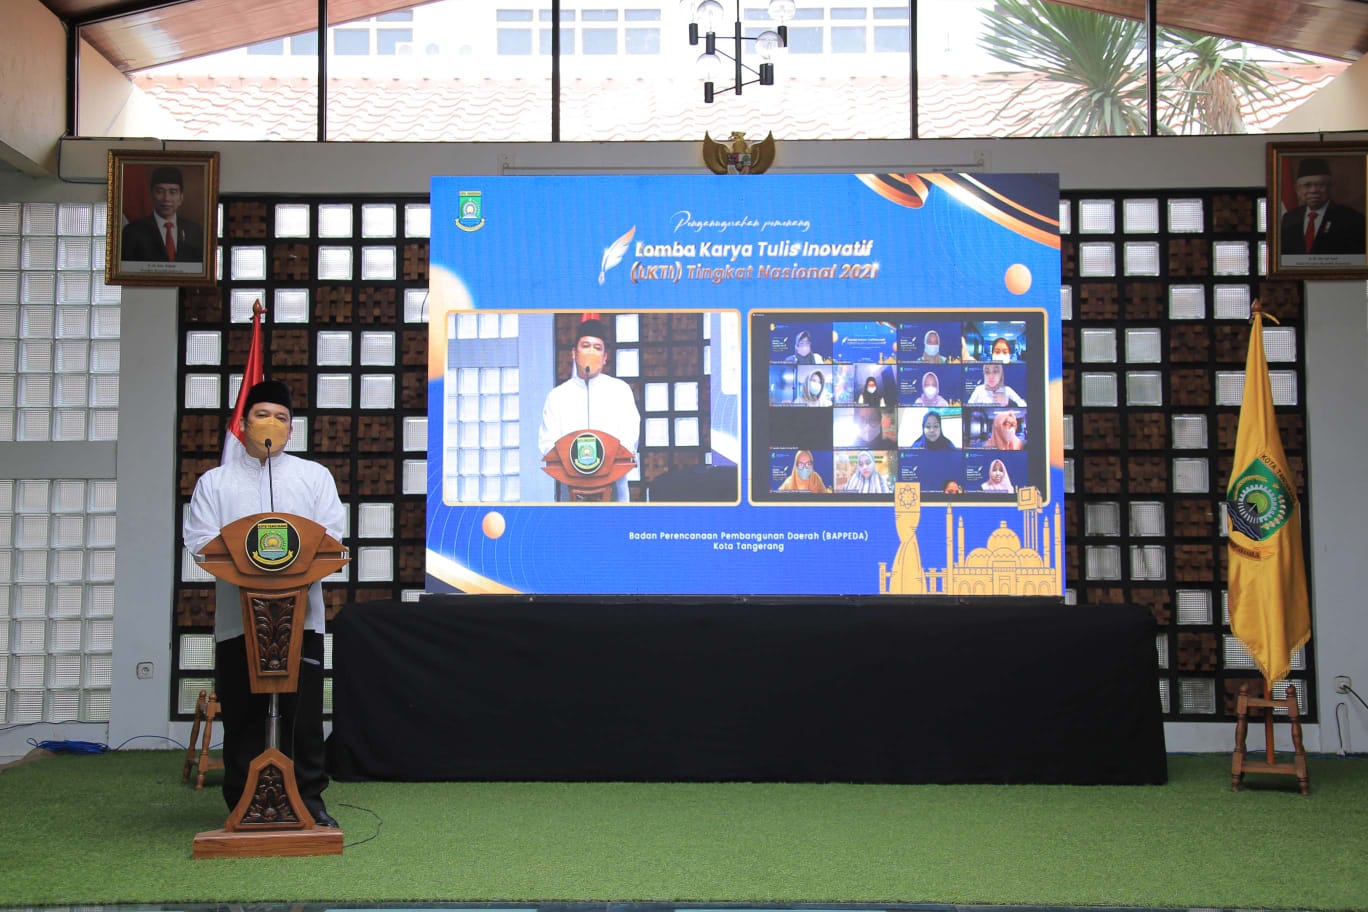 Wali Kota Tangerang Arief R. Wismansyah hadir dalam acara Penganugerahan Pemenang Lomba Karya Tulis Inovatif (LKTI) di Pusat Pemerintahan Kota Tangerang, Jumat 12 November 2021.